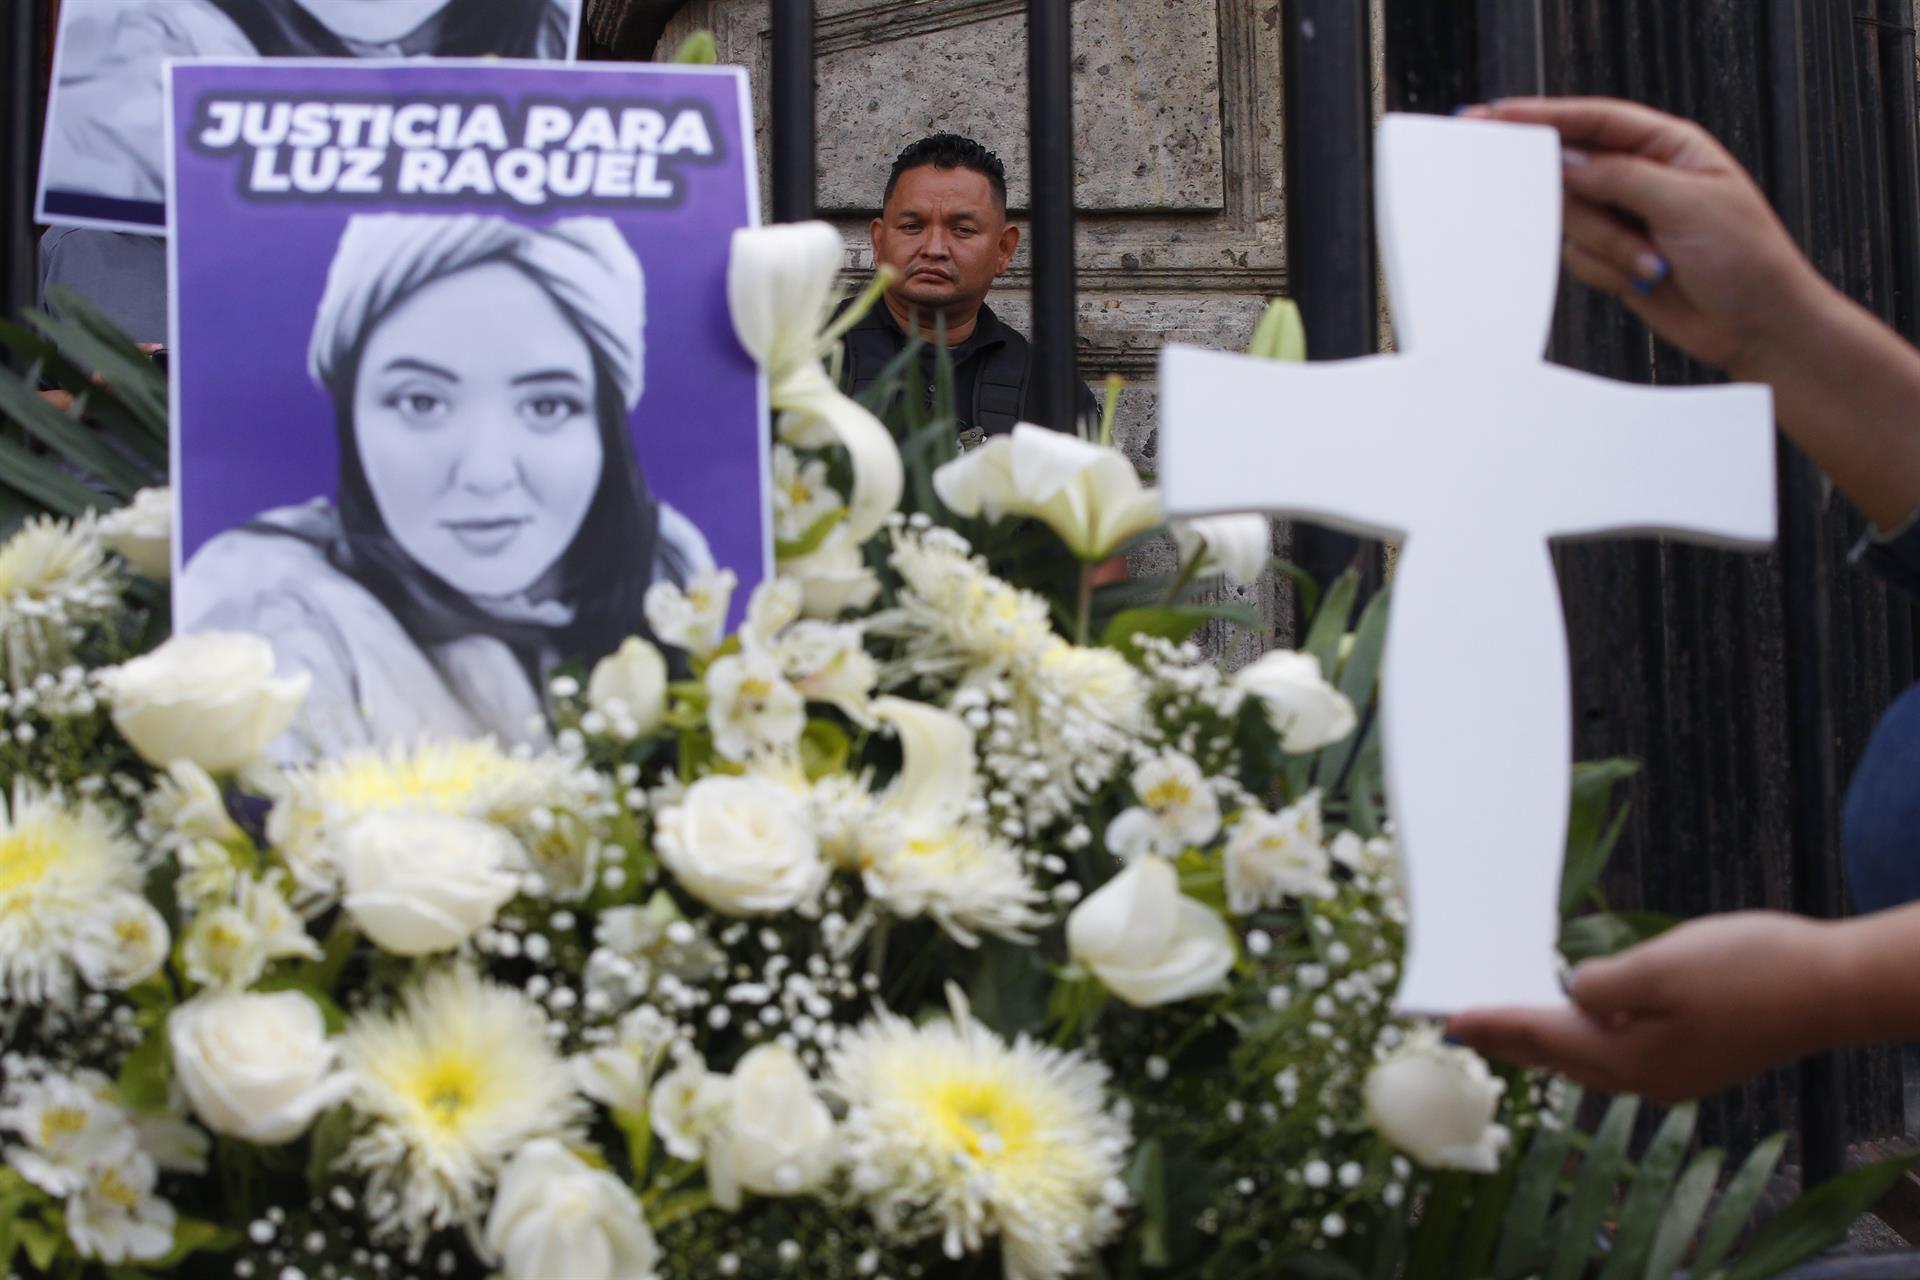 Activistas protestan contra el feminicidio y piden justicia por el caso de Luz Raquel Padilla hoy, frente al Palacio de Gobierno de Jalisco, en Guadalajara (México). EFE/ Francisco Guasco
